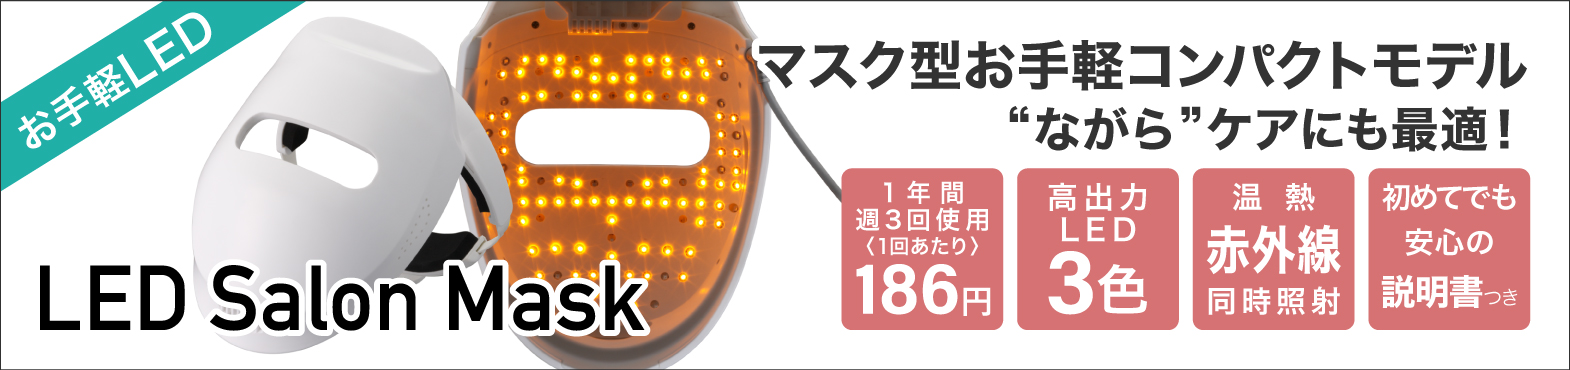 LED Salon Mask